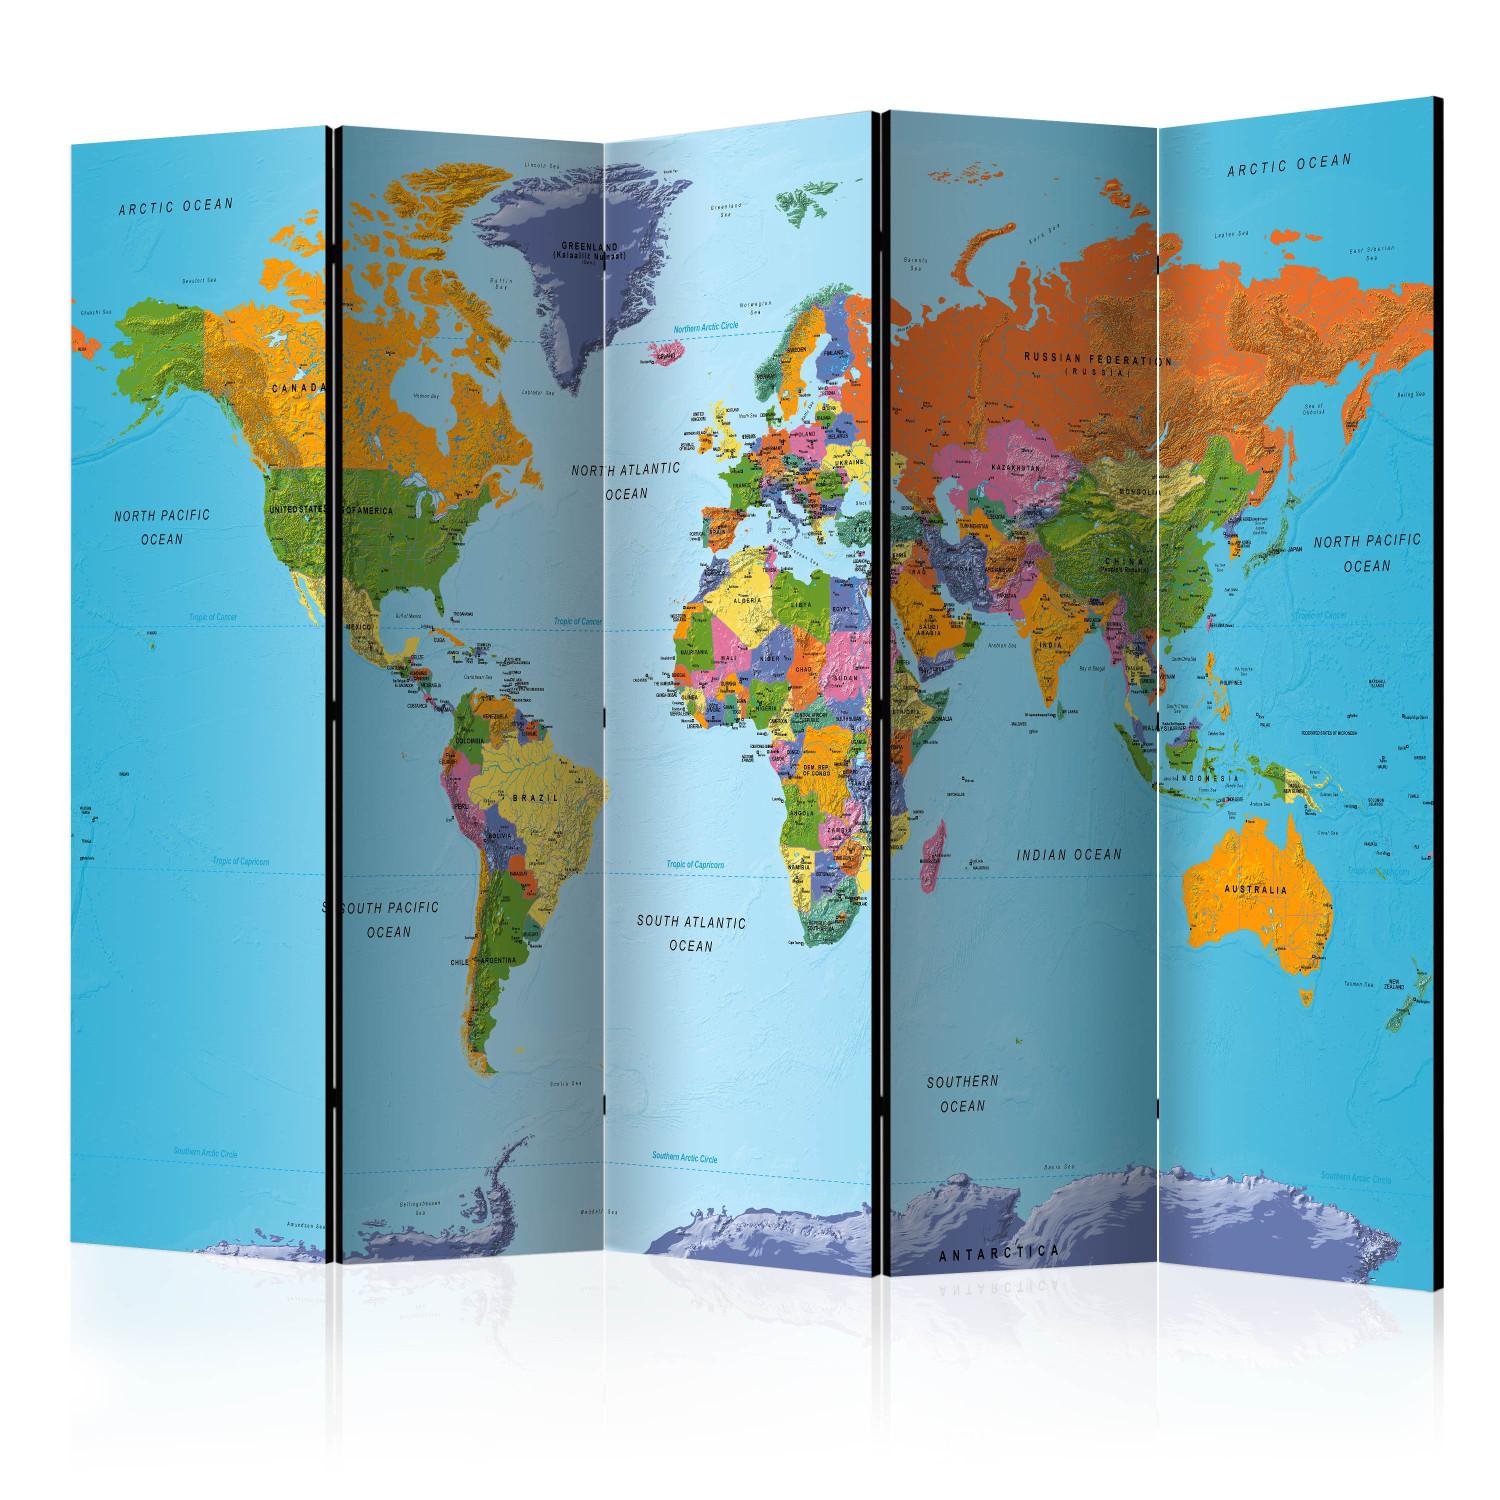 Biombo decorativo Geografía colorida - mapa mundo continentes coloridos escritos